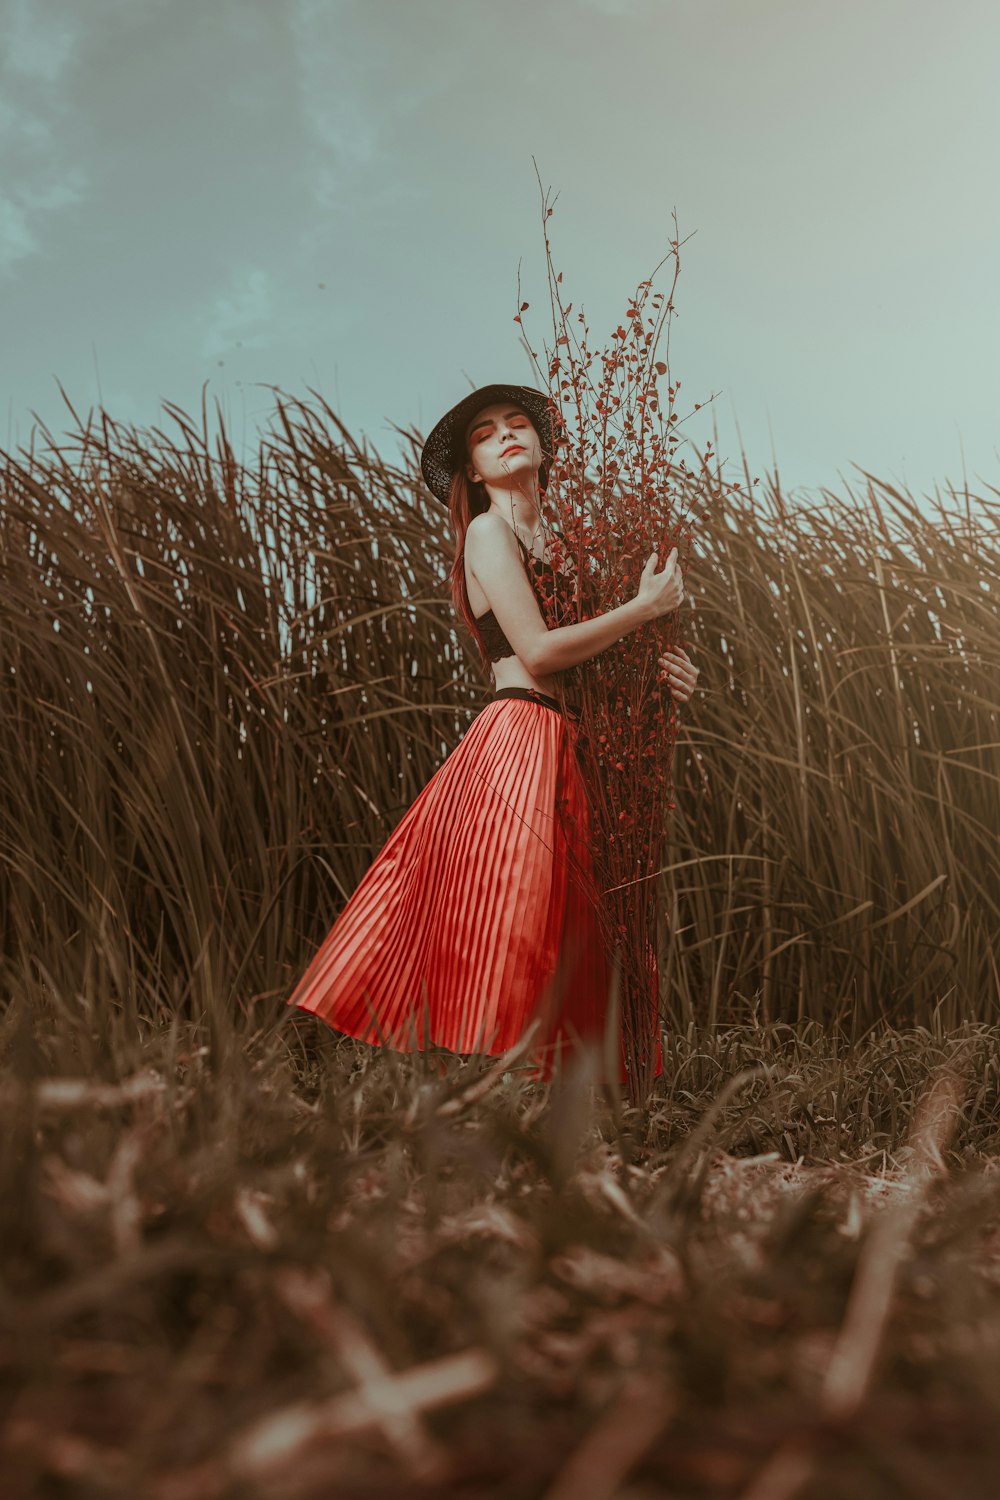 Mujer en vestido rojo y blanco de pie en el campo de hierba marrón durante el día